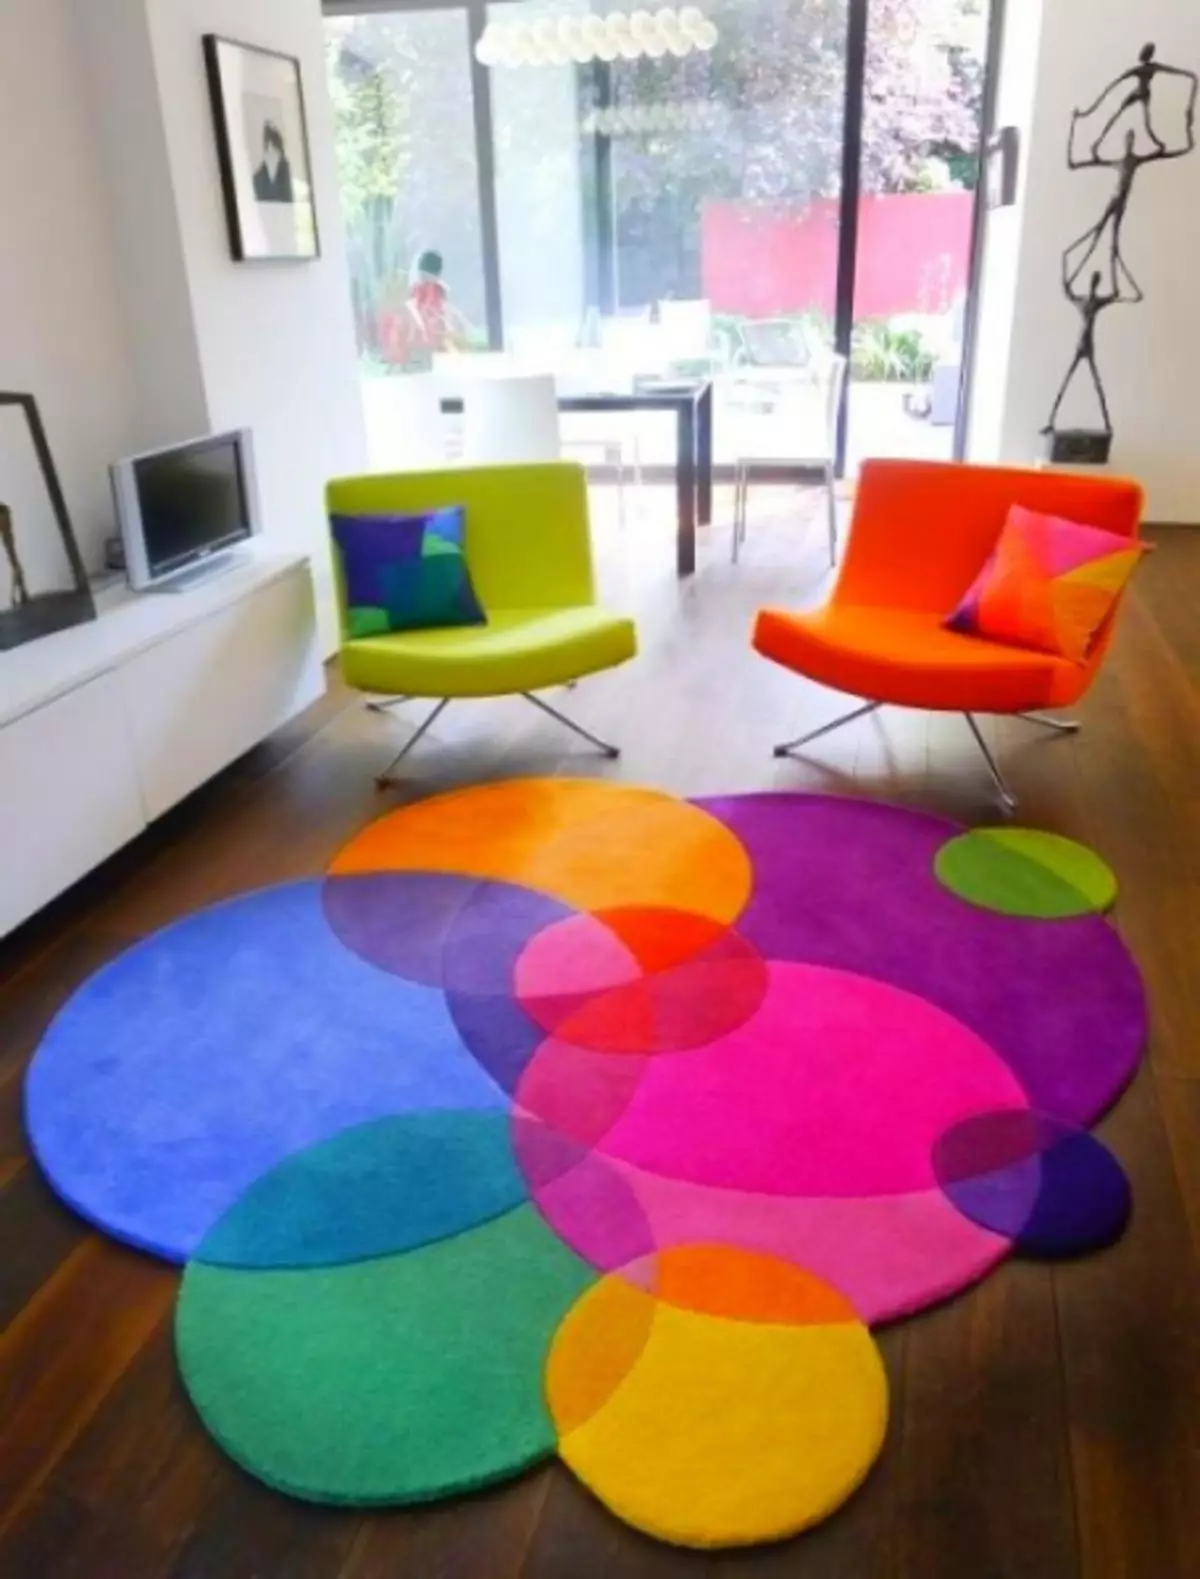 Lys teppe i interiøret: Hvor lett og lett å ta med maling i leiligheten din (37 bilder)